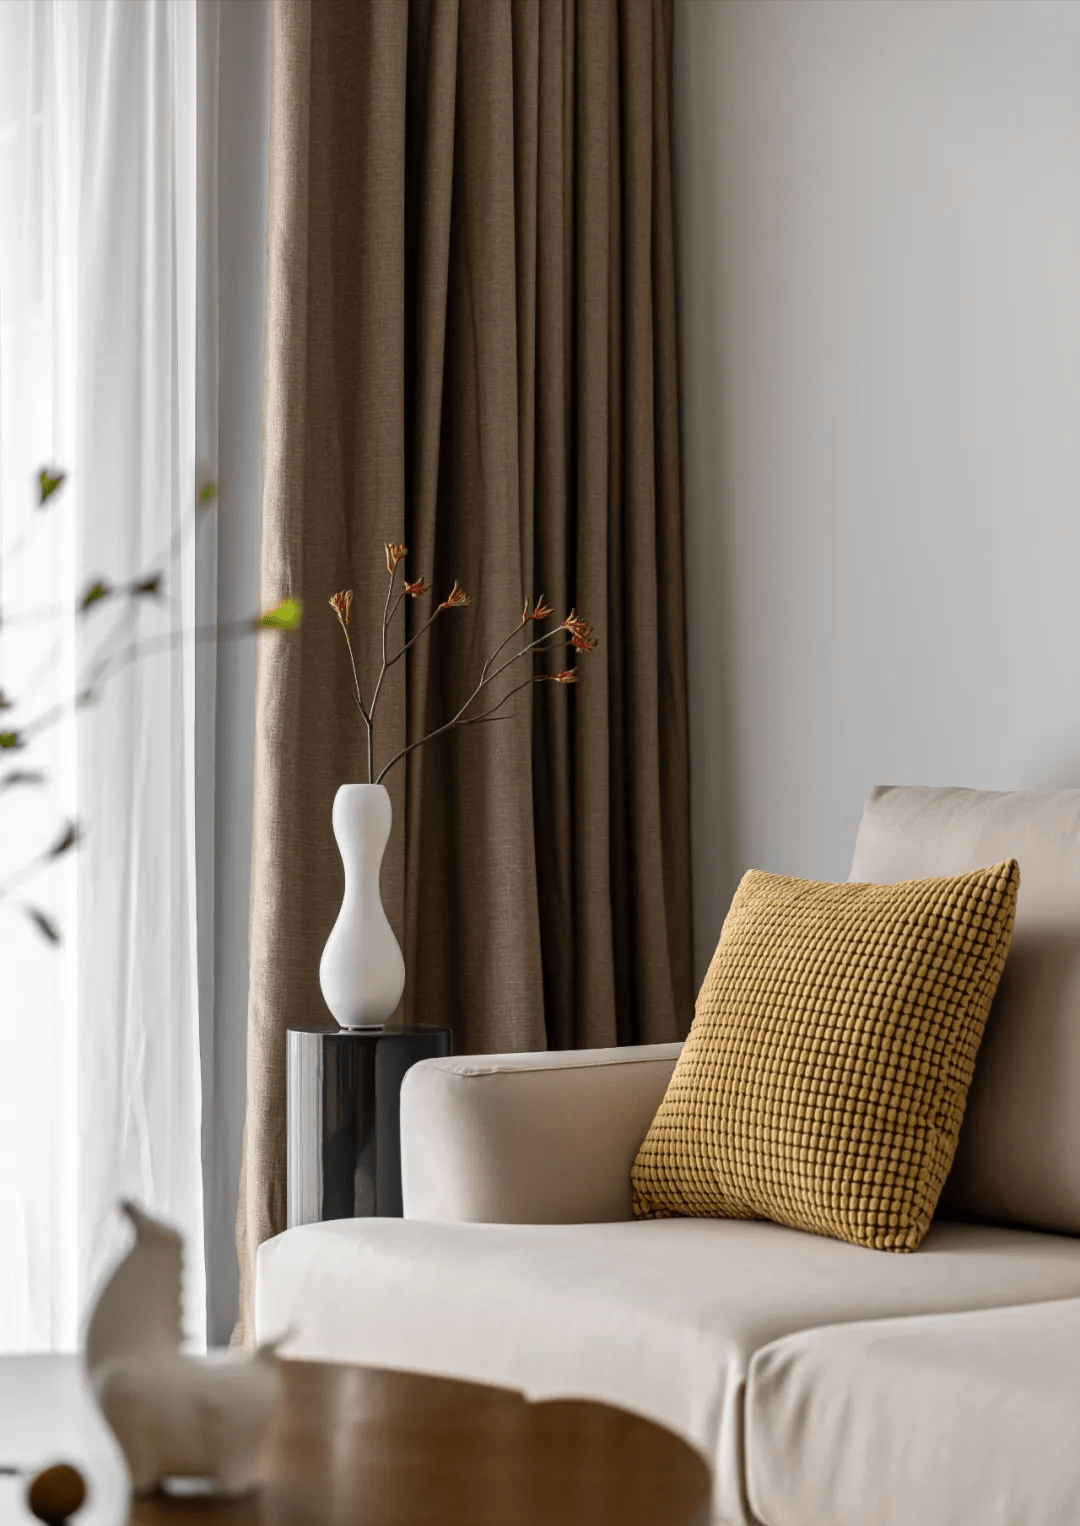 沙发背景的圆形框景结合中式山水壁纸,成为客厅空间灵动诗意的点缀